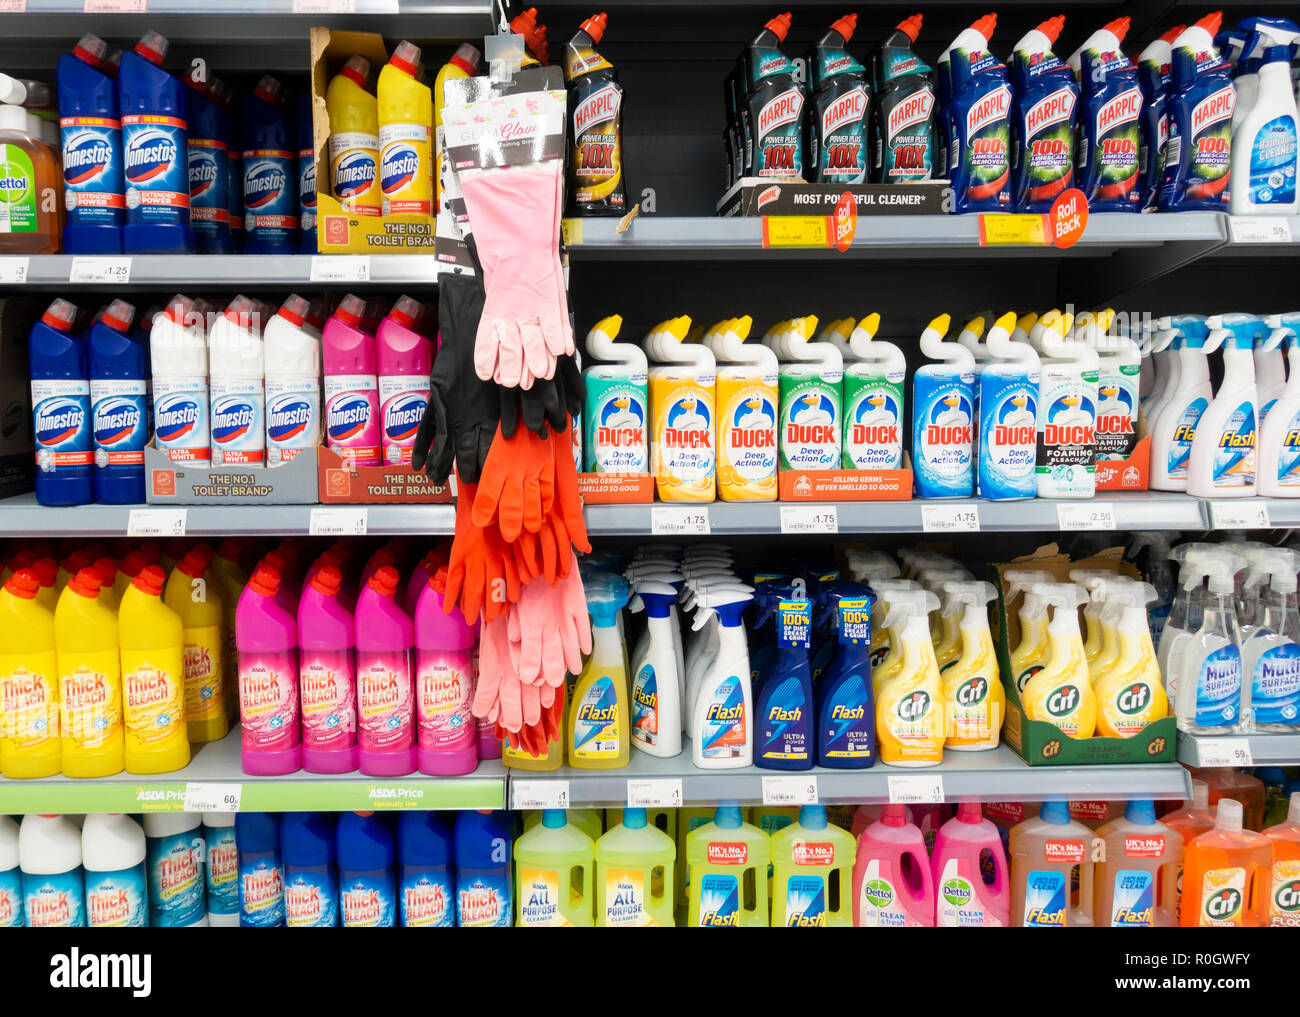 Wc /bagno prodotti di pulizia:candeggina, wc condotto..., nel supermercato Asda. Regno Unito Foto Stock